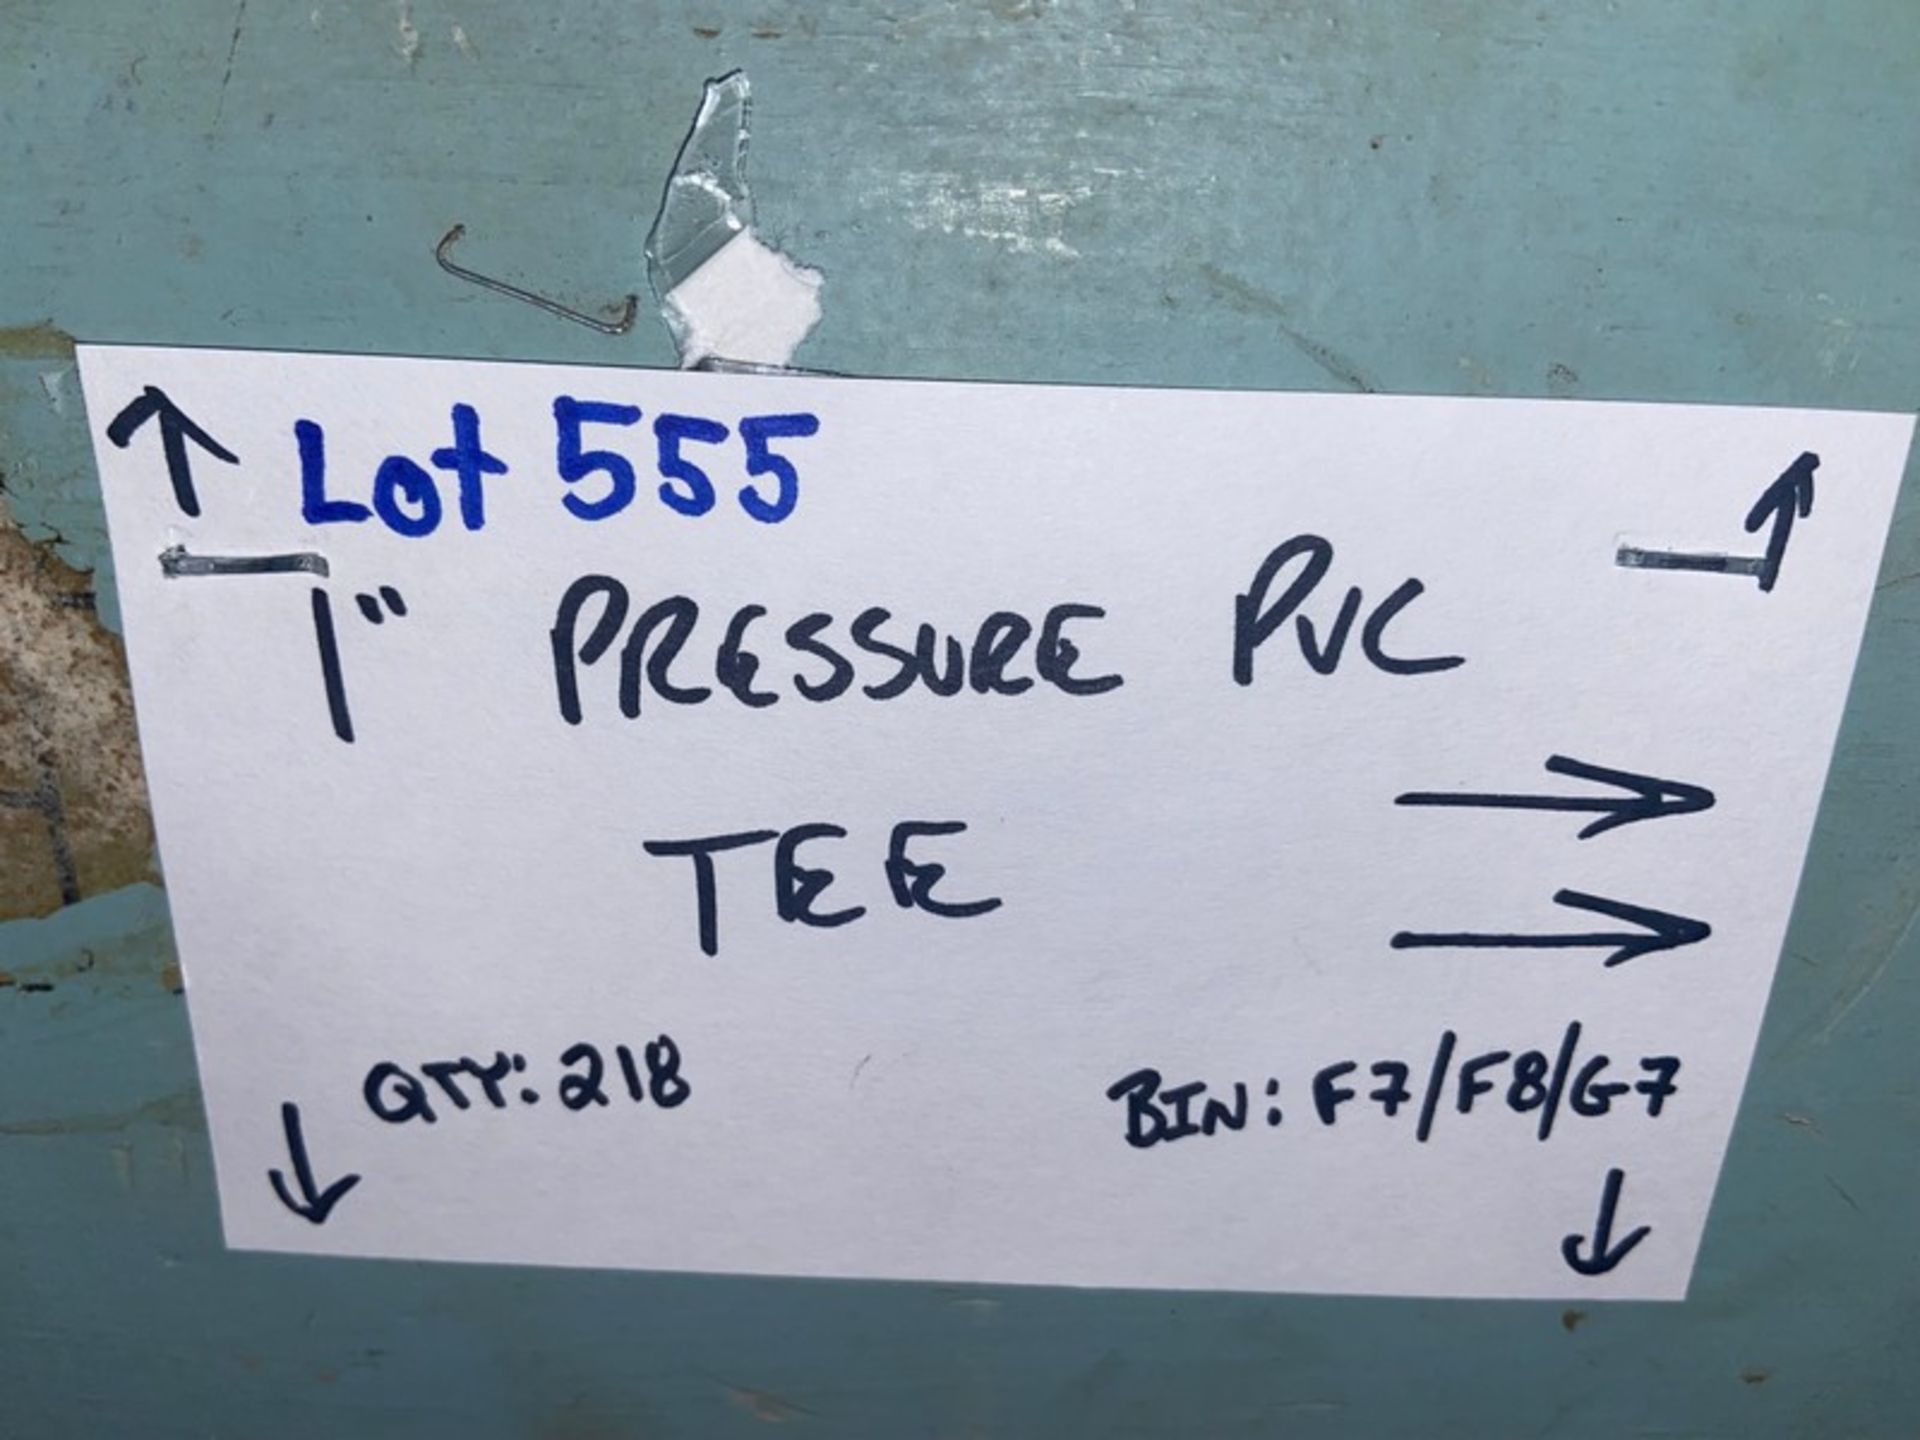 (218) 1” Pressure PVC TEE (Bin:F7/F8/G7) (LOCATED IN MONROEVILLE, PA) - Bild 4 aus 10